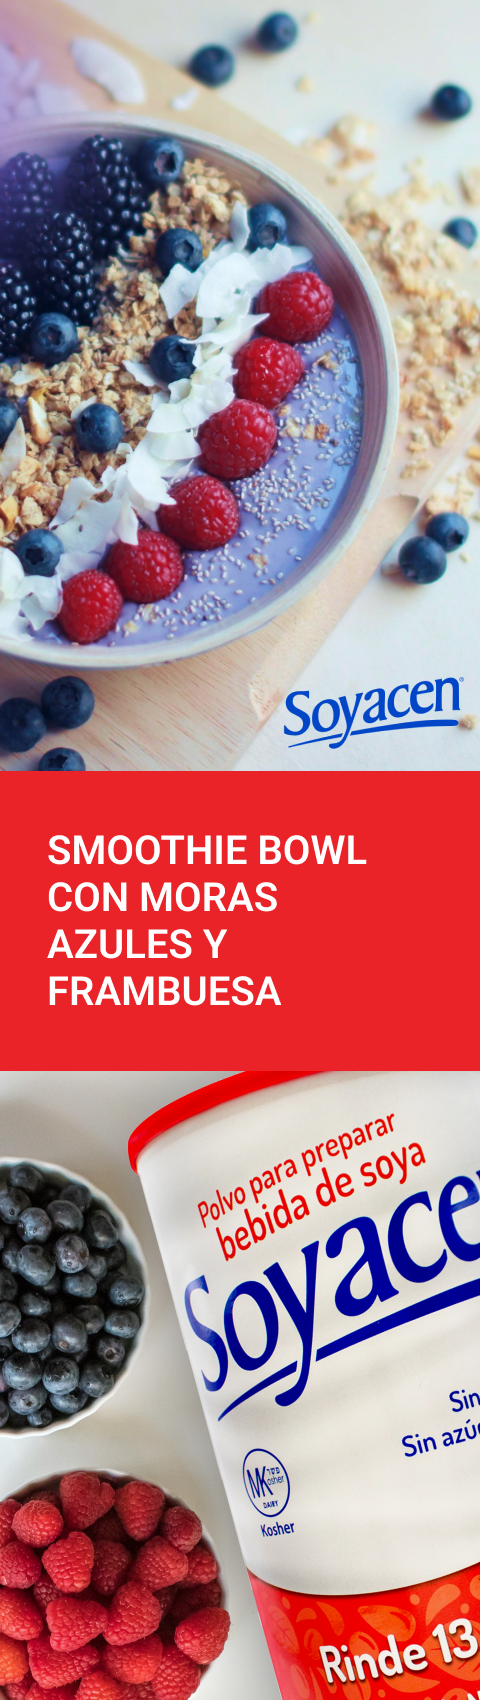 Smoothie bowl de moras azules y frambuesa | Blog PRONACEN